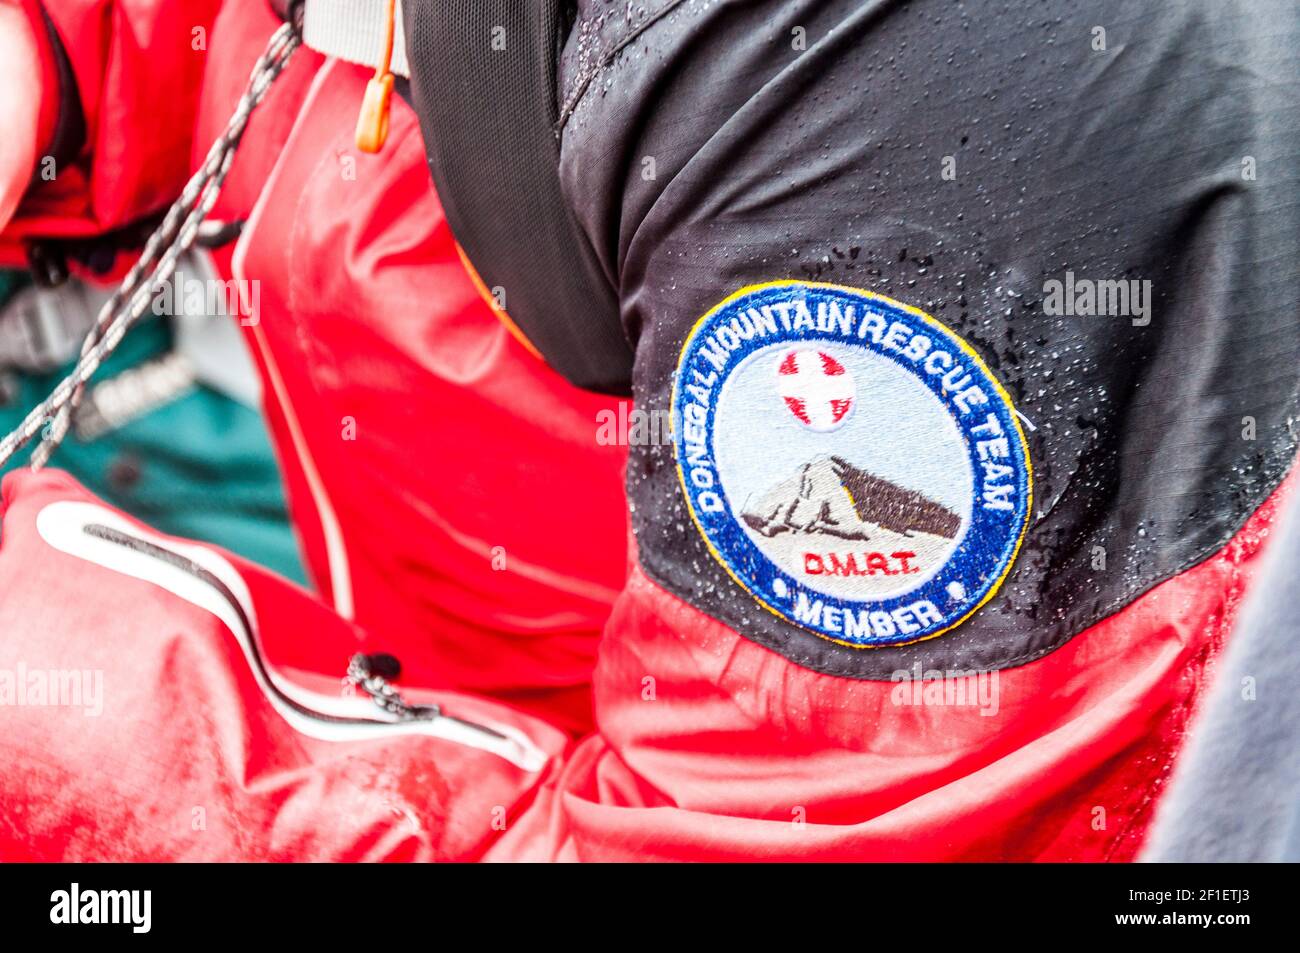 Donegal Mountain Rescue Team membro di una missione. Etichetta con logo sulla manica impermeabile della giacca ad alta visibilità. Foto Stock